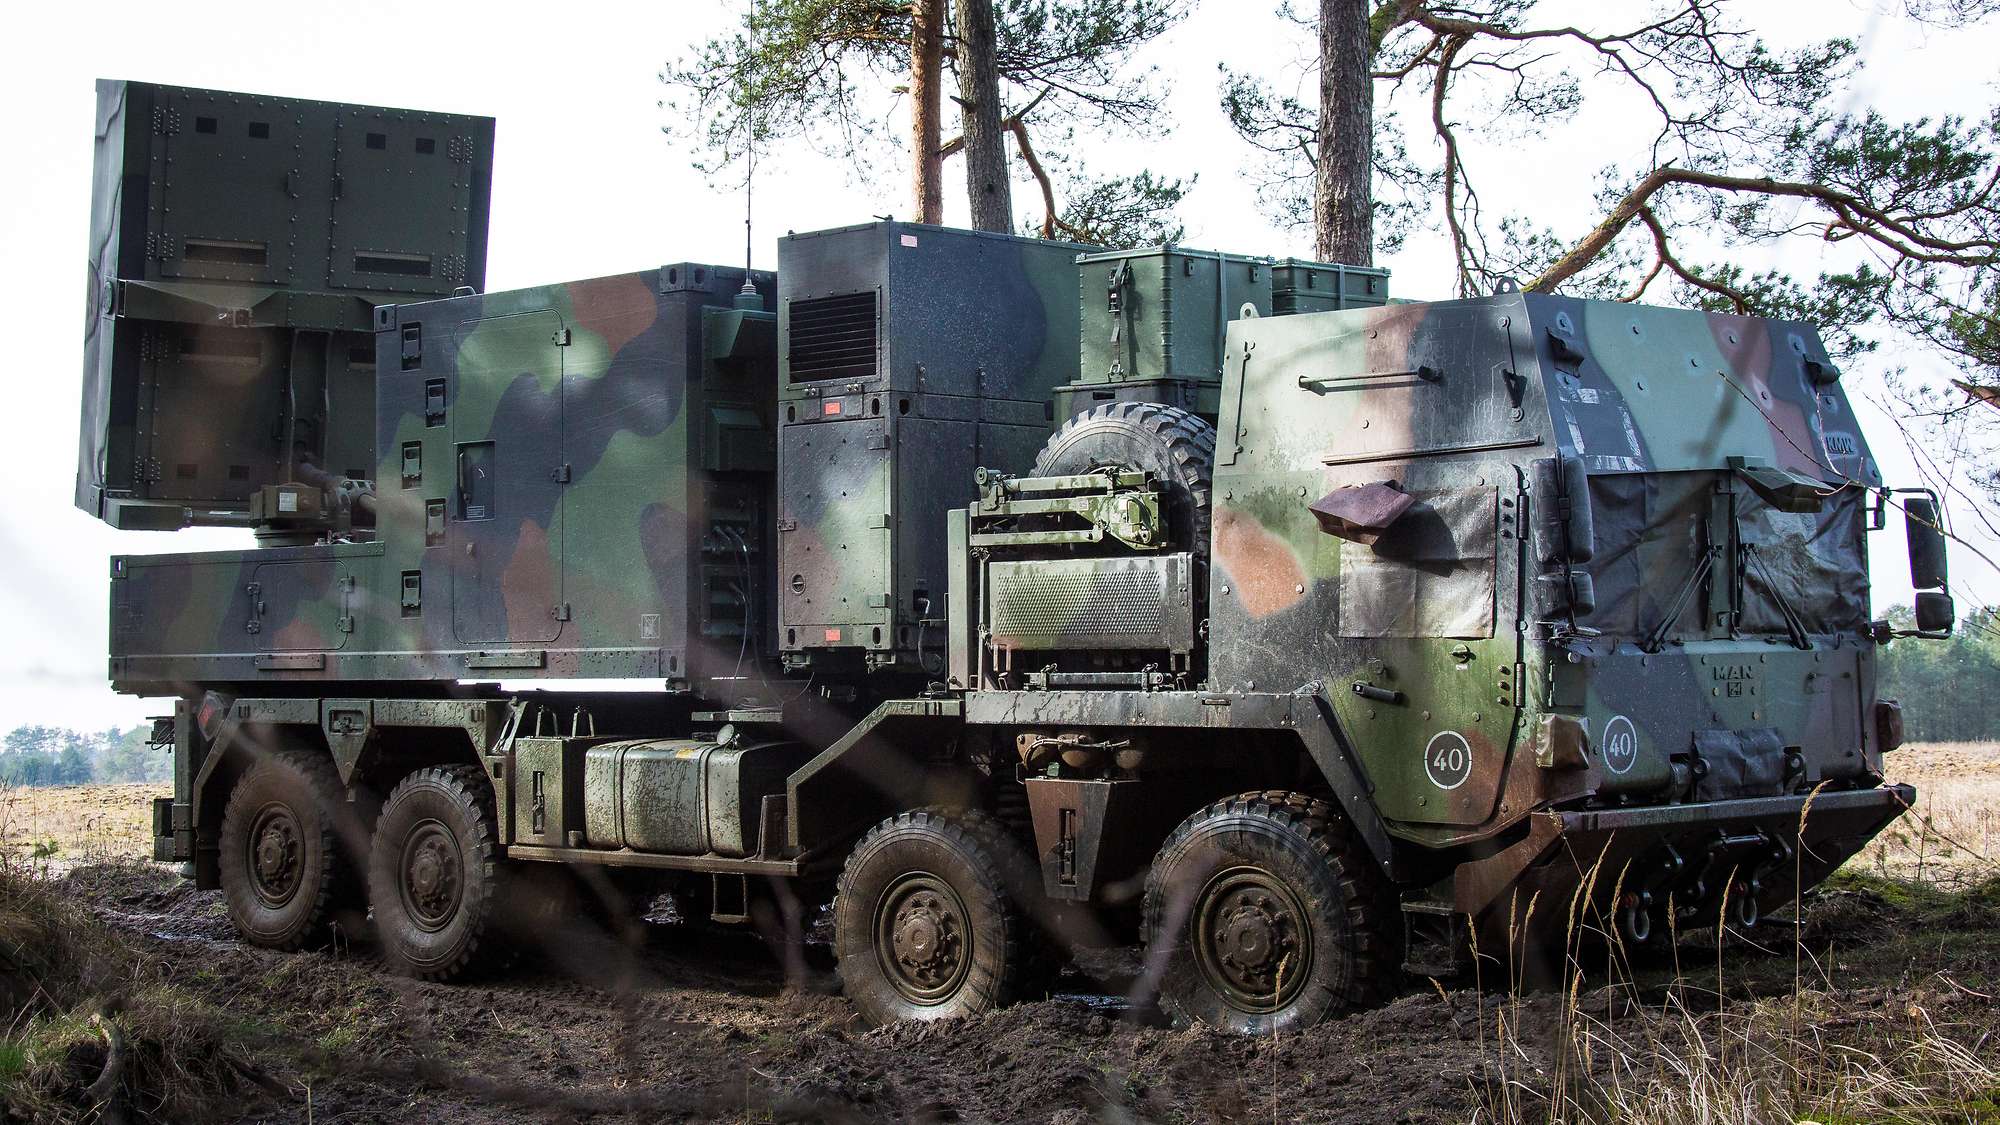 Niemcy przekazali ukraińskim Siłom Zbrojnym system radarowy Cobra z przeciwbaterią za 50 000 000 euro, jest to jeden z najlepszych radarów na świecie